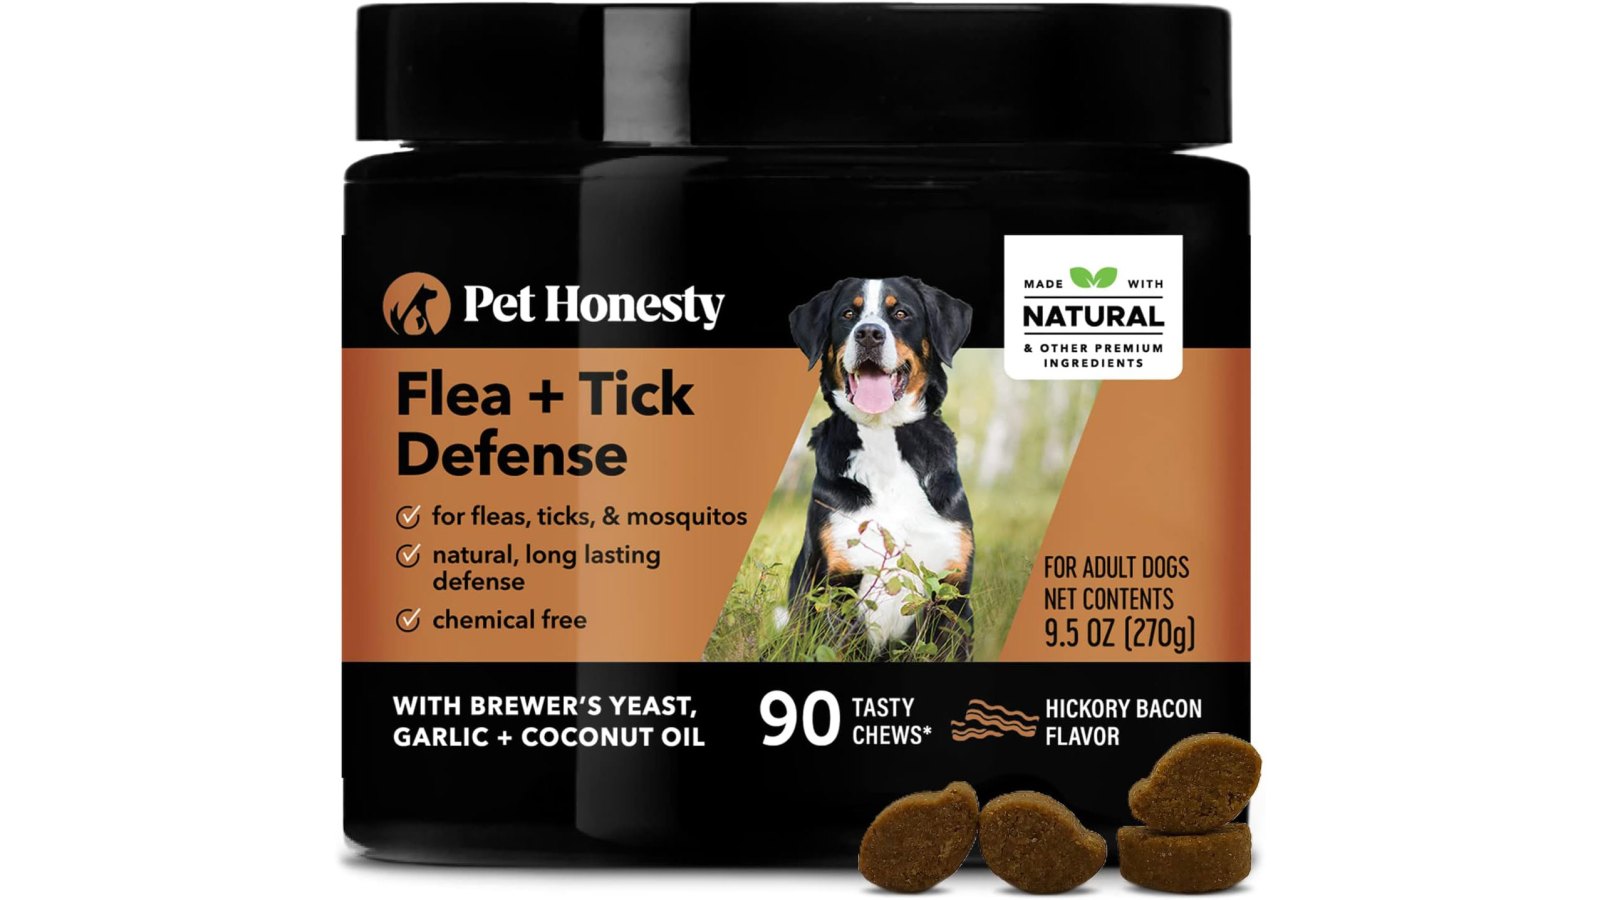 Pet Honesty Flea & Tick Support Supplement (3)